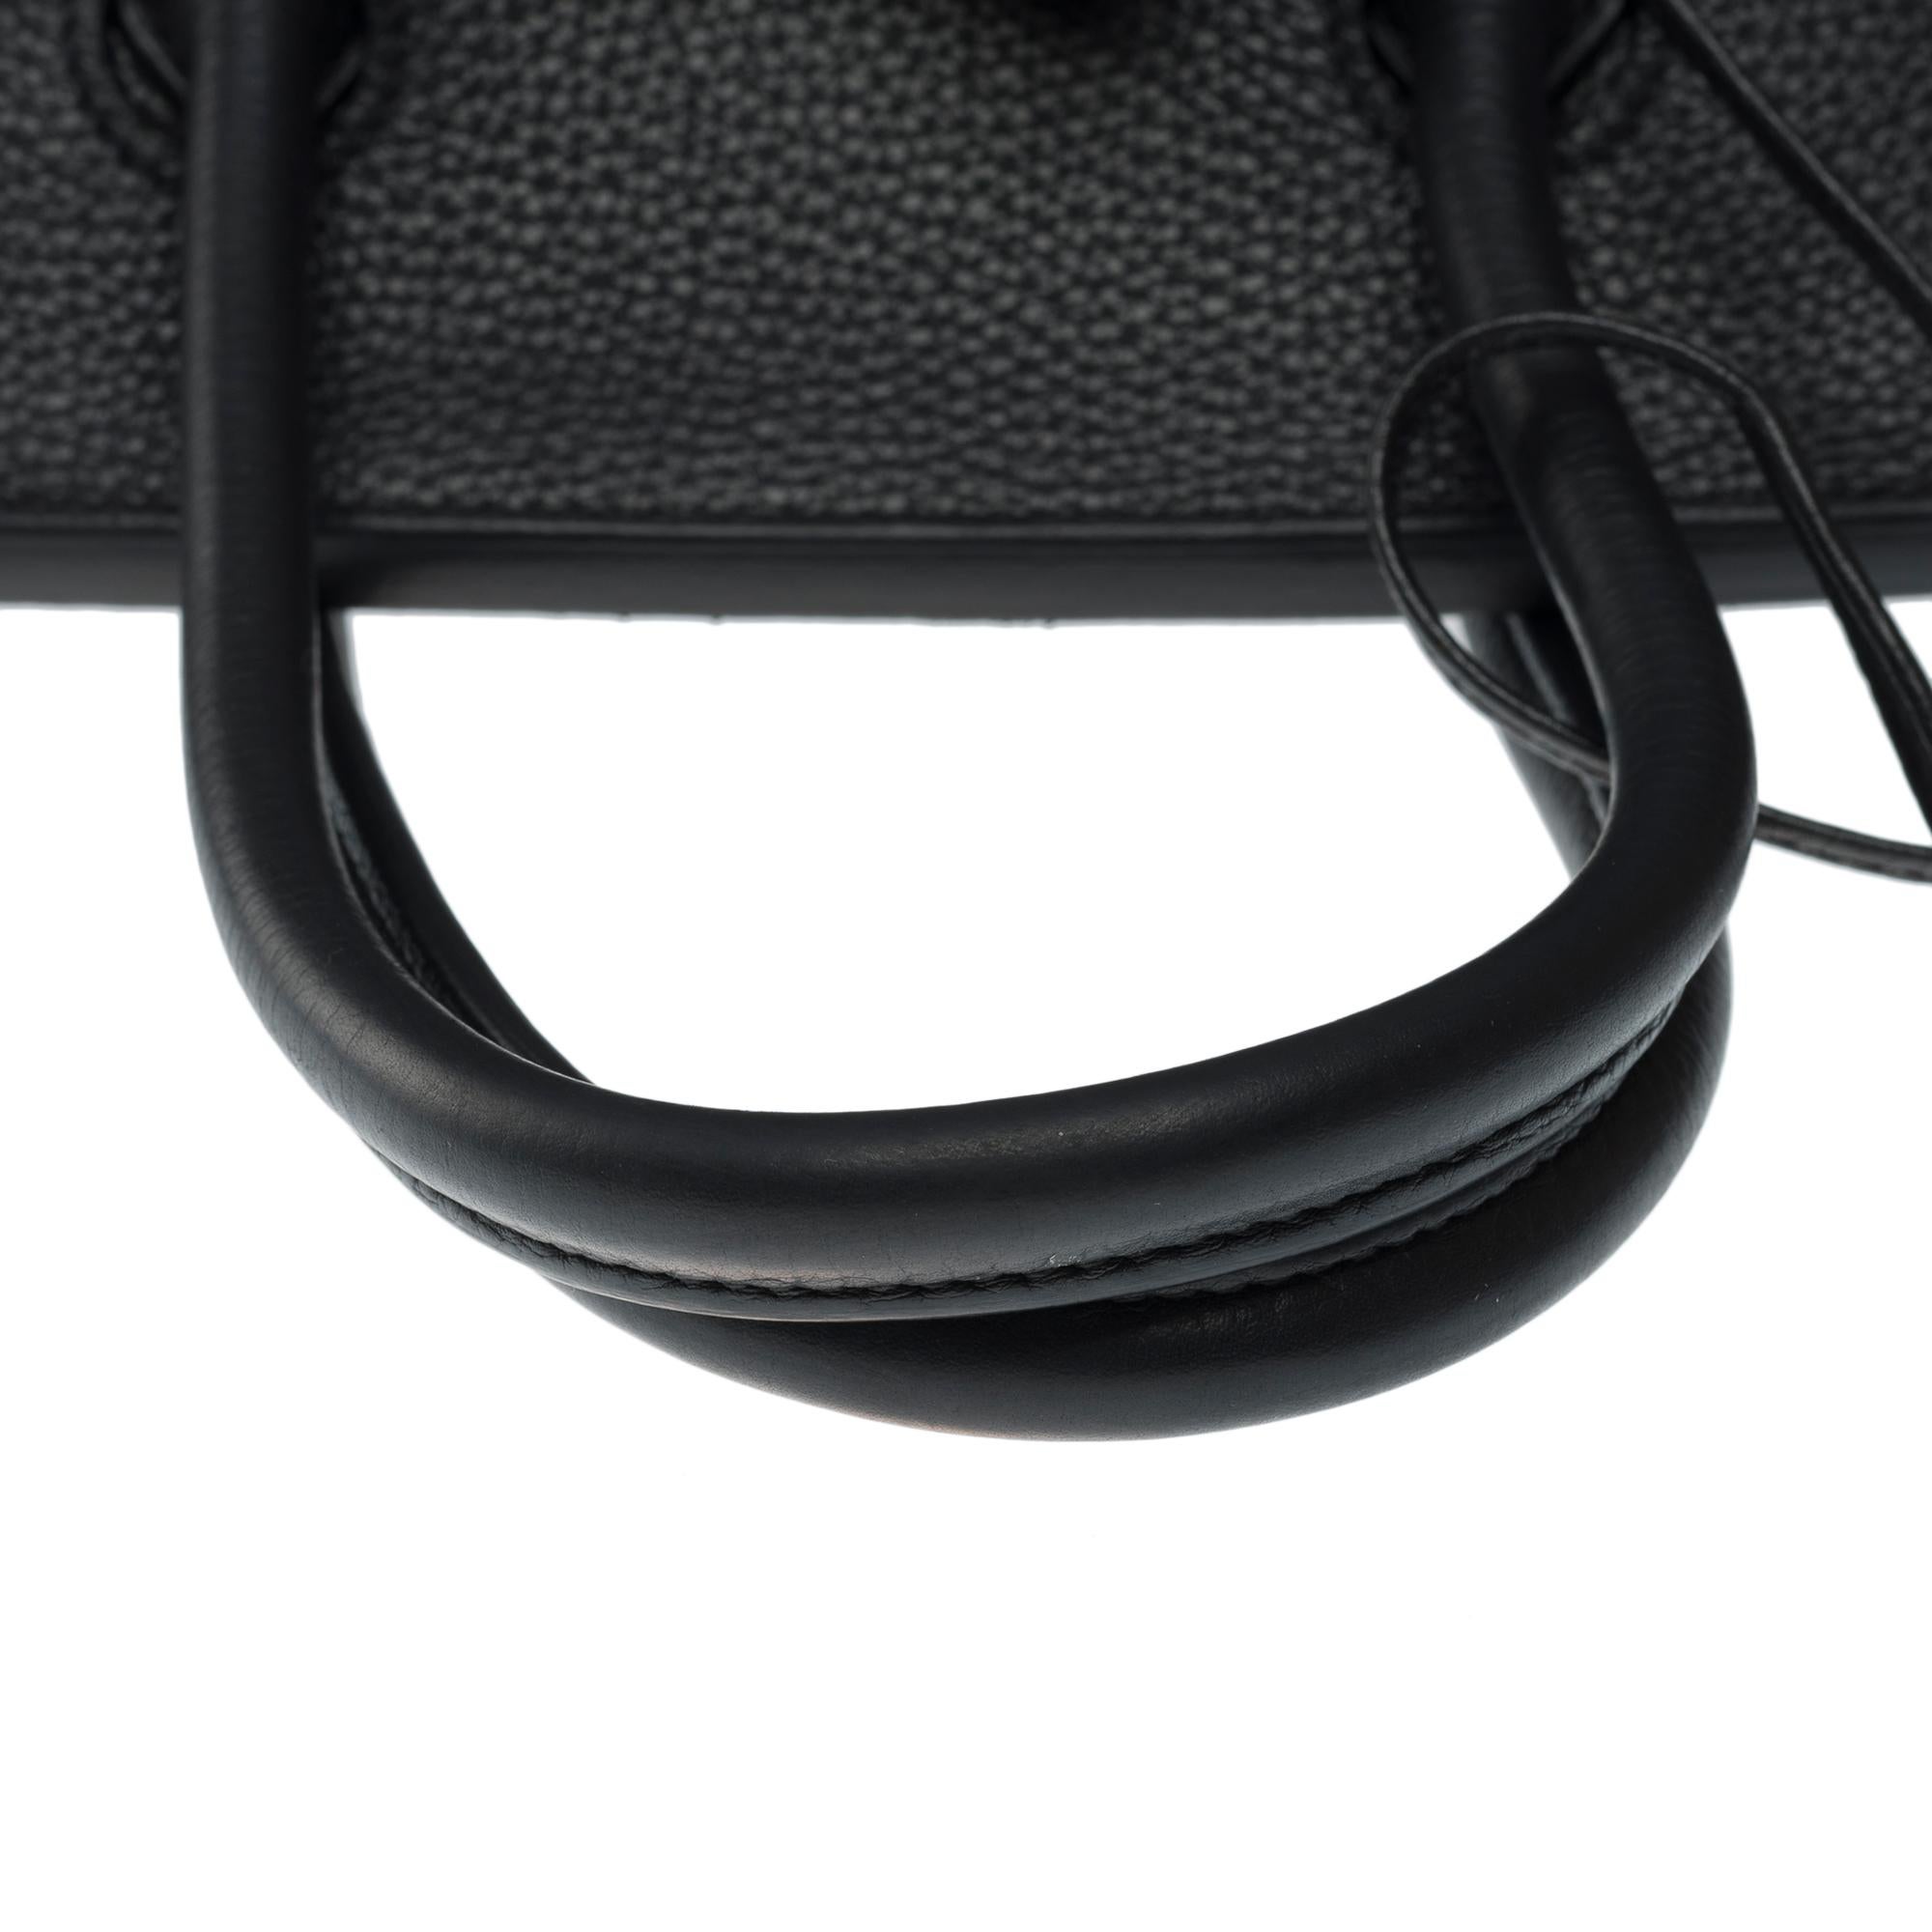 Stunning Hermes Birkin 30 handbag in Black Togo leather, SHW For Sale 6